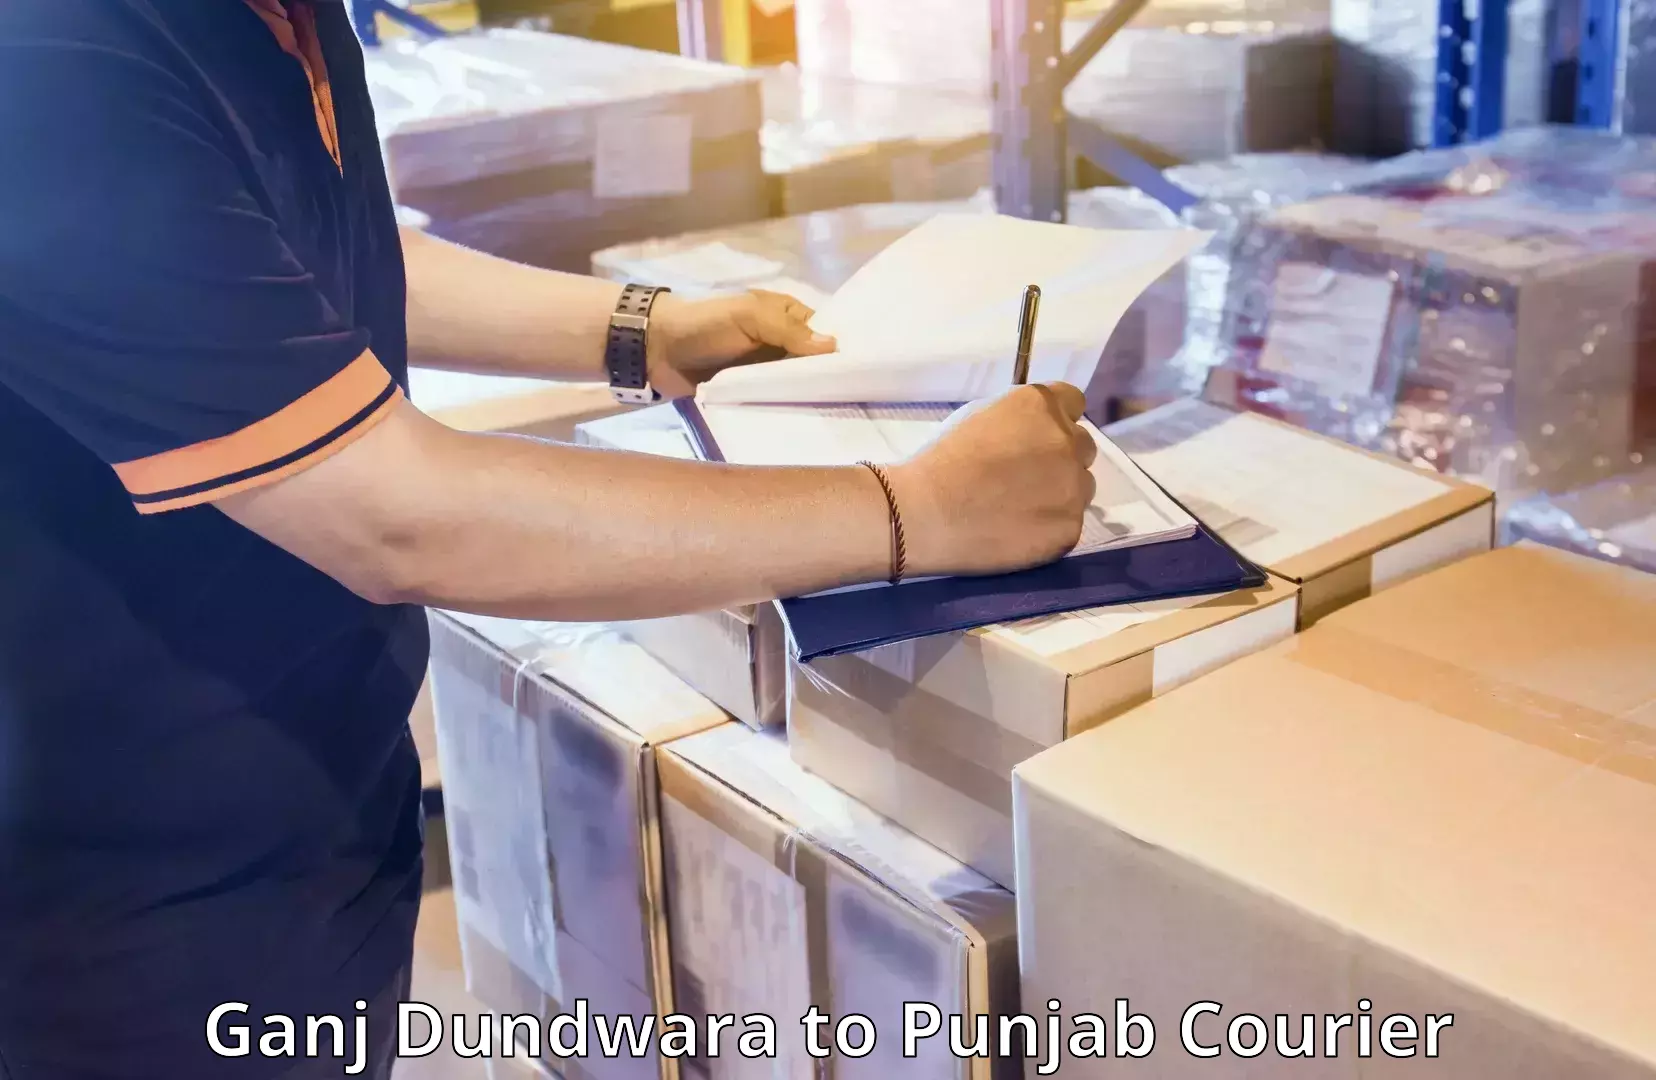 Personal effects shipping Ganj Dundwara to Punjab